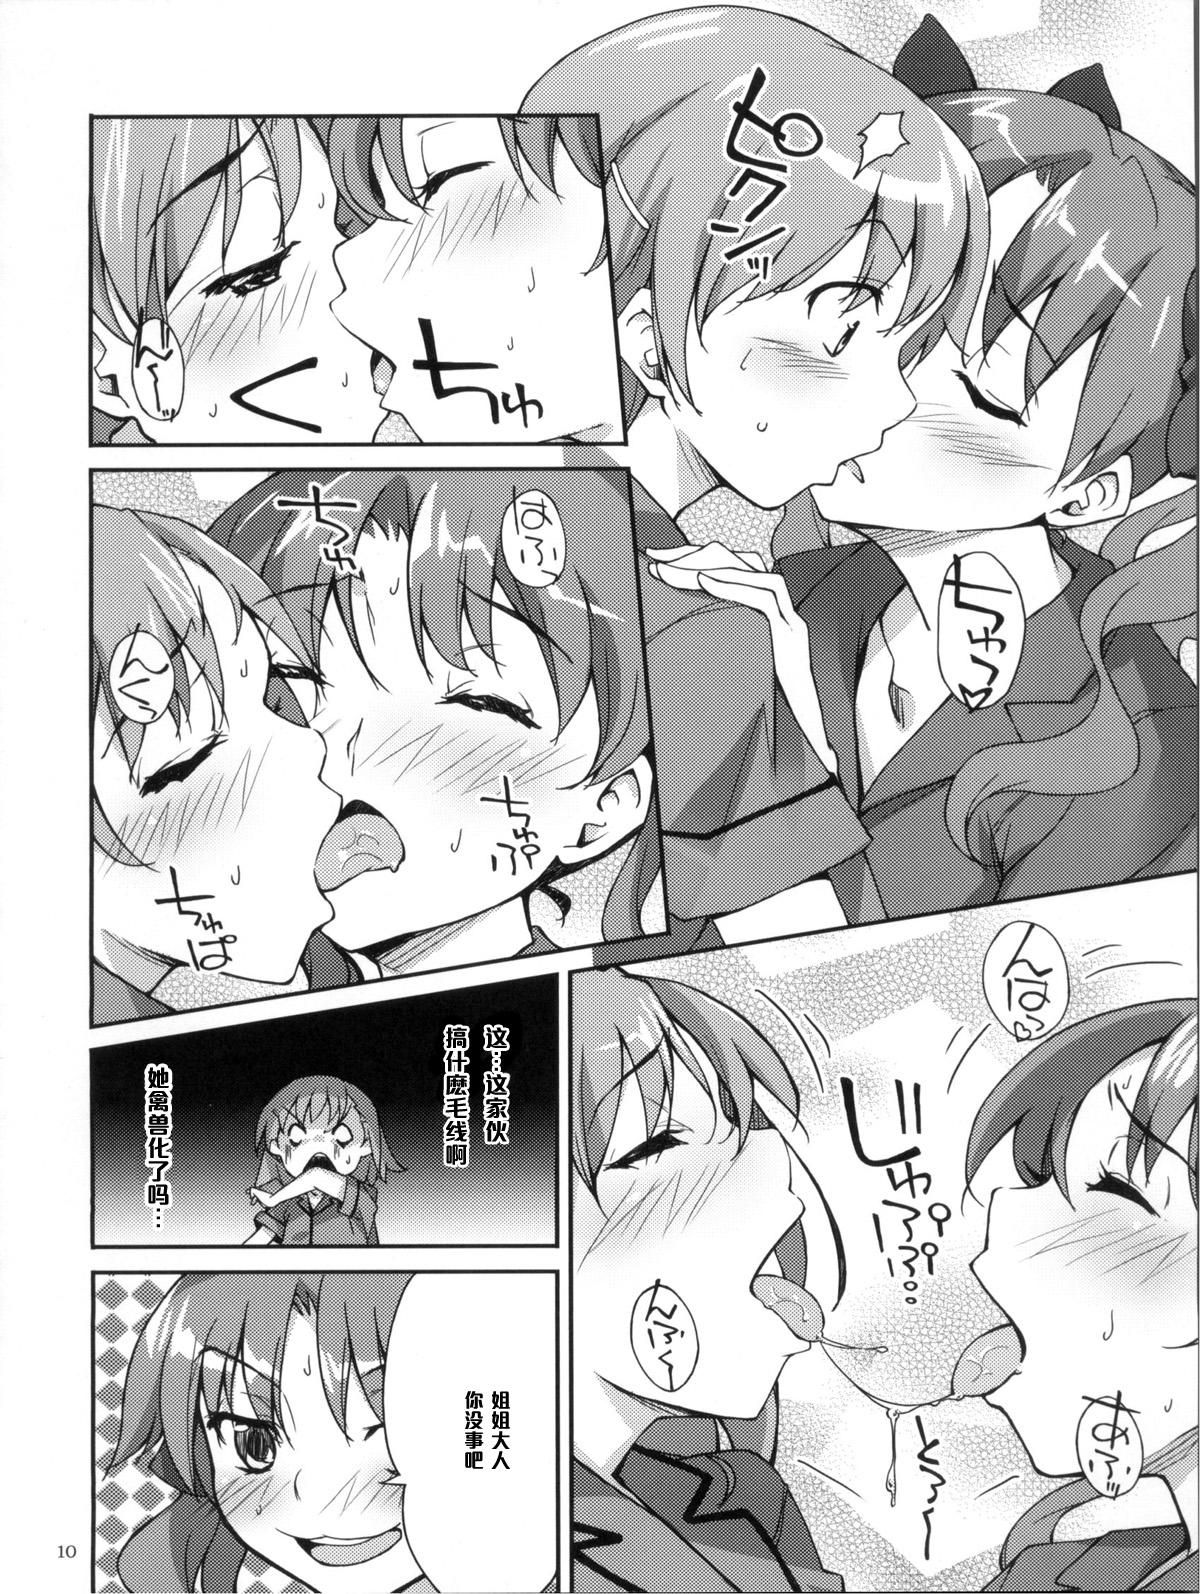 Passionate Desu no!! 2 - Toaru kagaku no railgun Screaming - Page 10